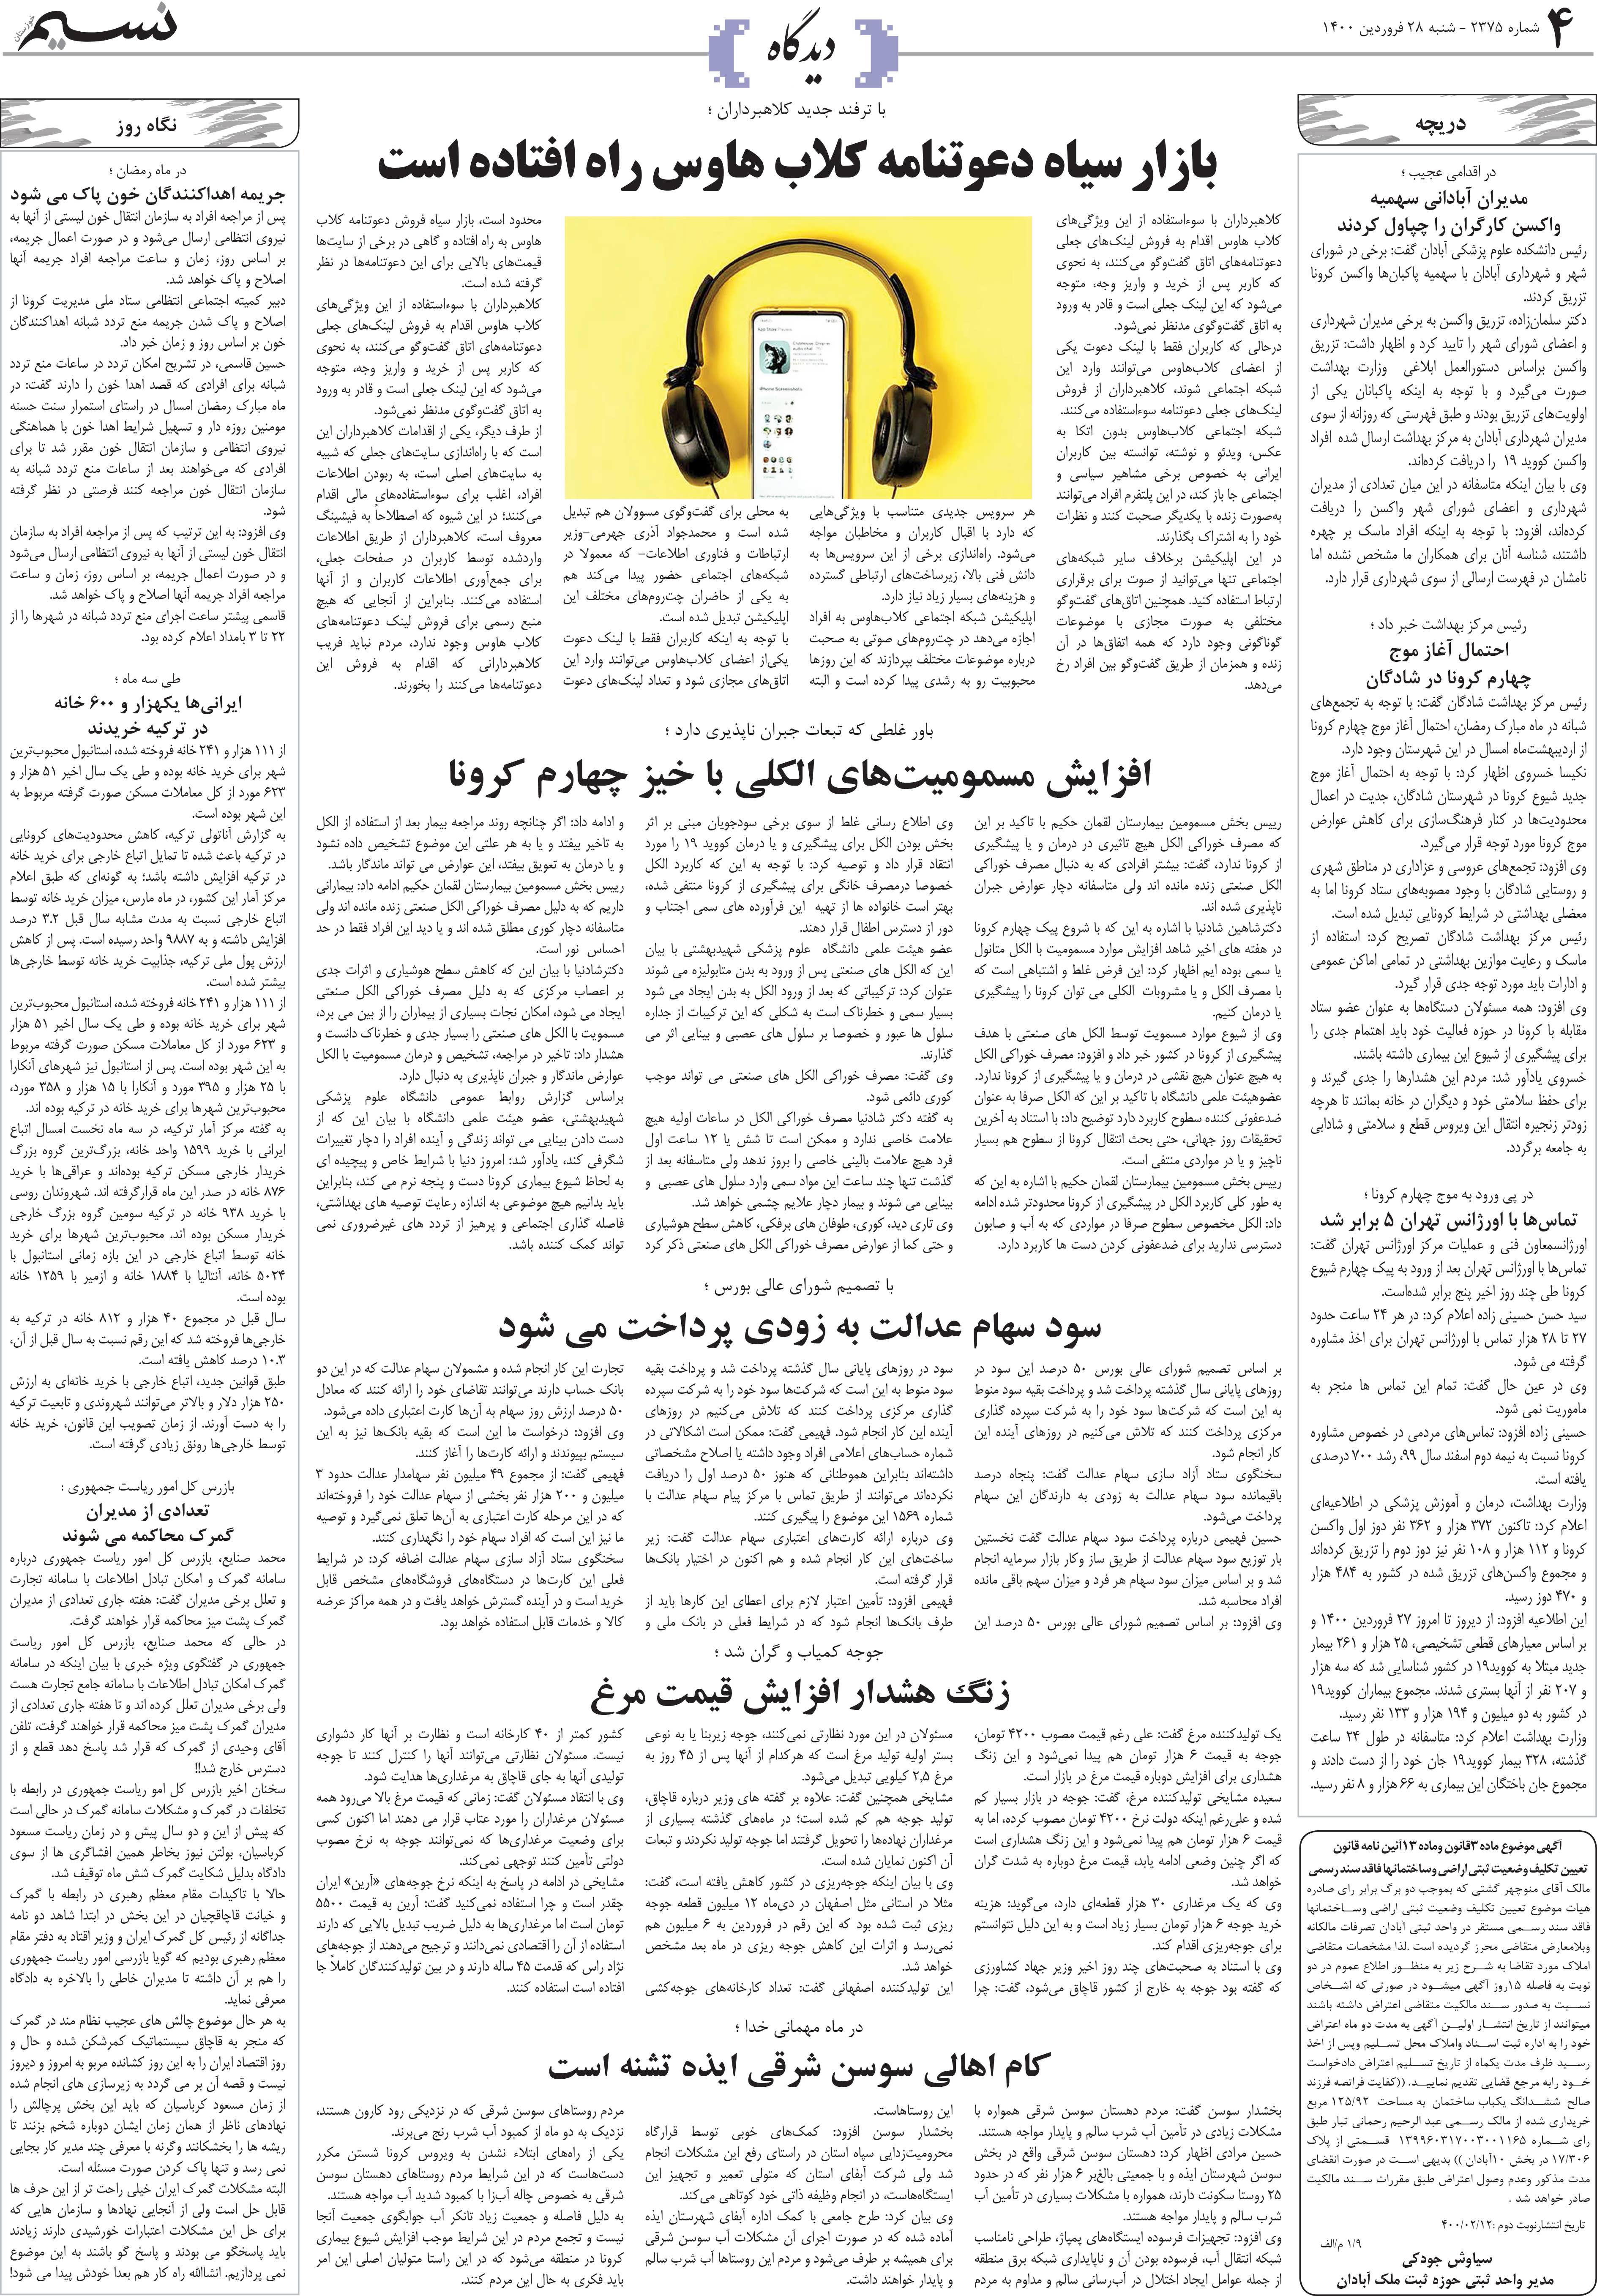 صفحه دیدگاه روزنامه نسیم شماره 2375